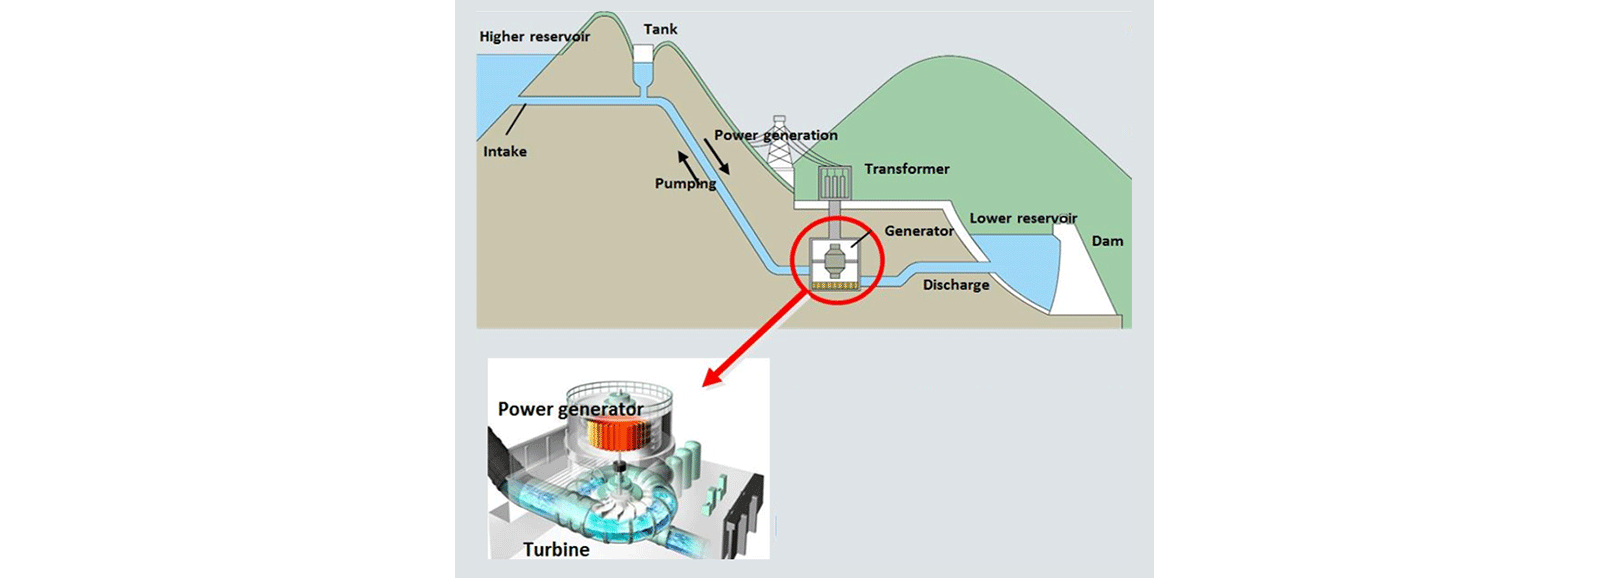 Centrale idroelettrica: generazione di energia tramite pompaggio